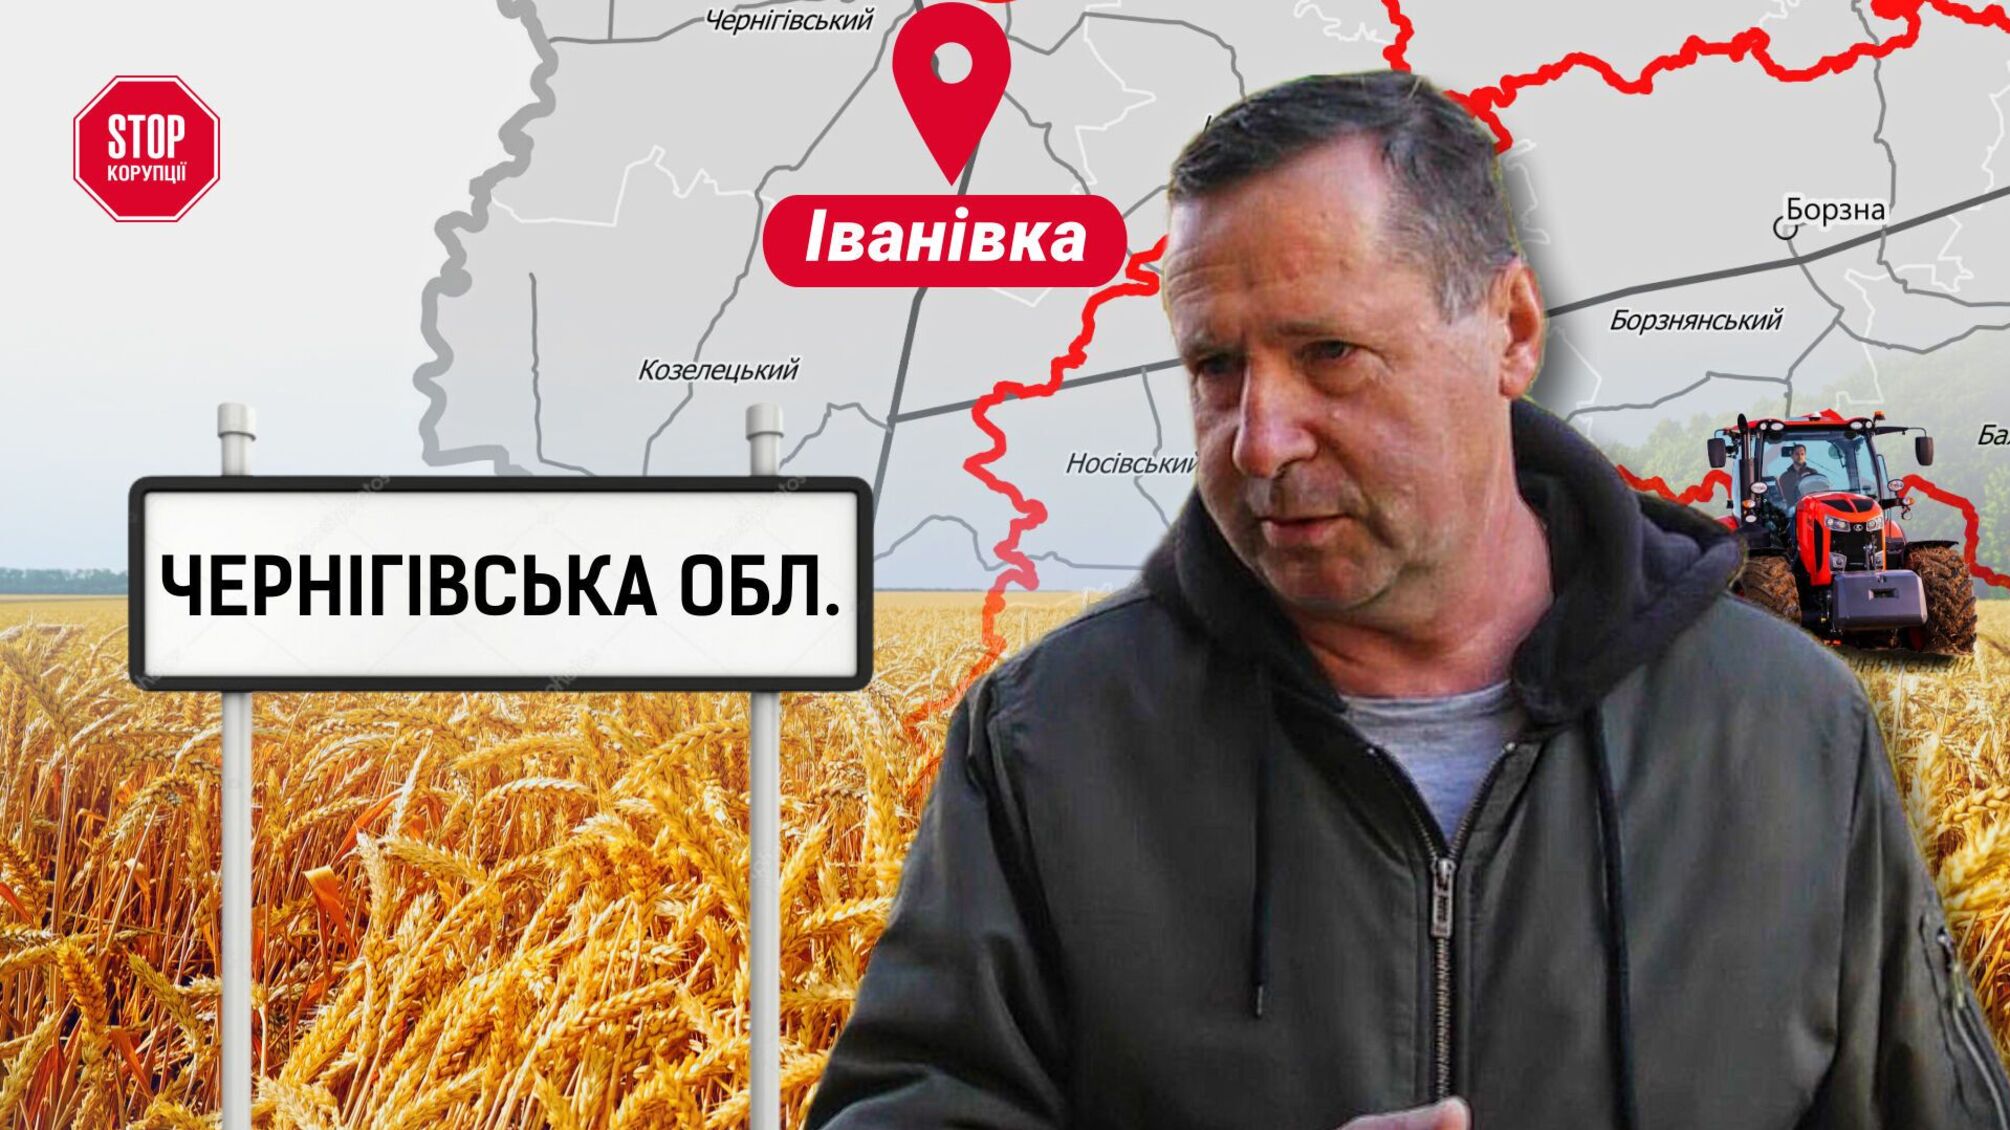 На Чернігівщині прибічники ексдиректора Скварського блокують агрофірму: інвестори можуть втратити врожай?